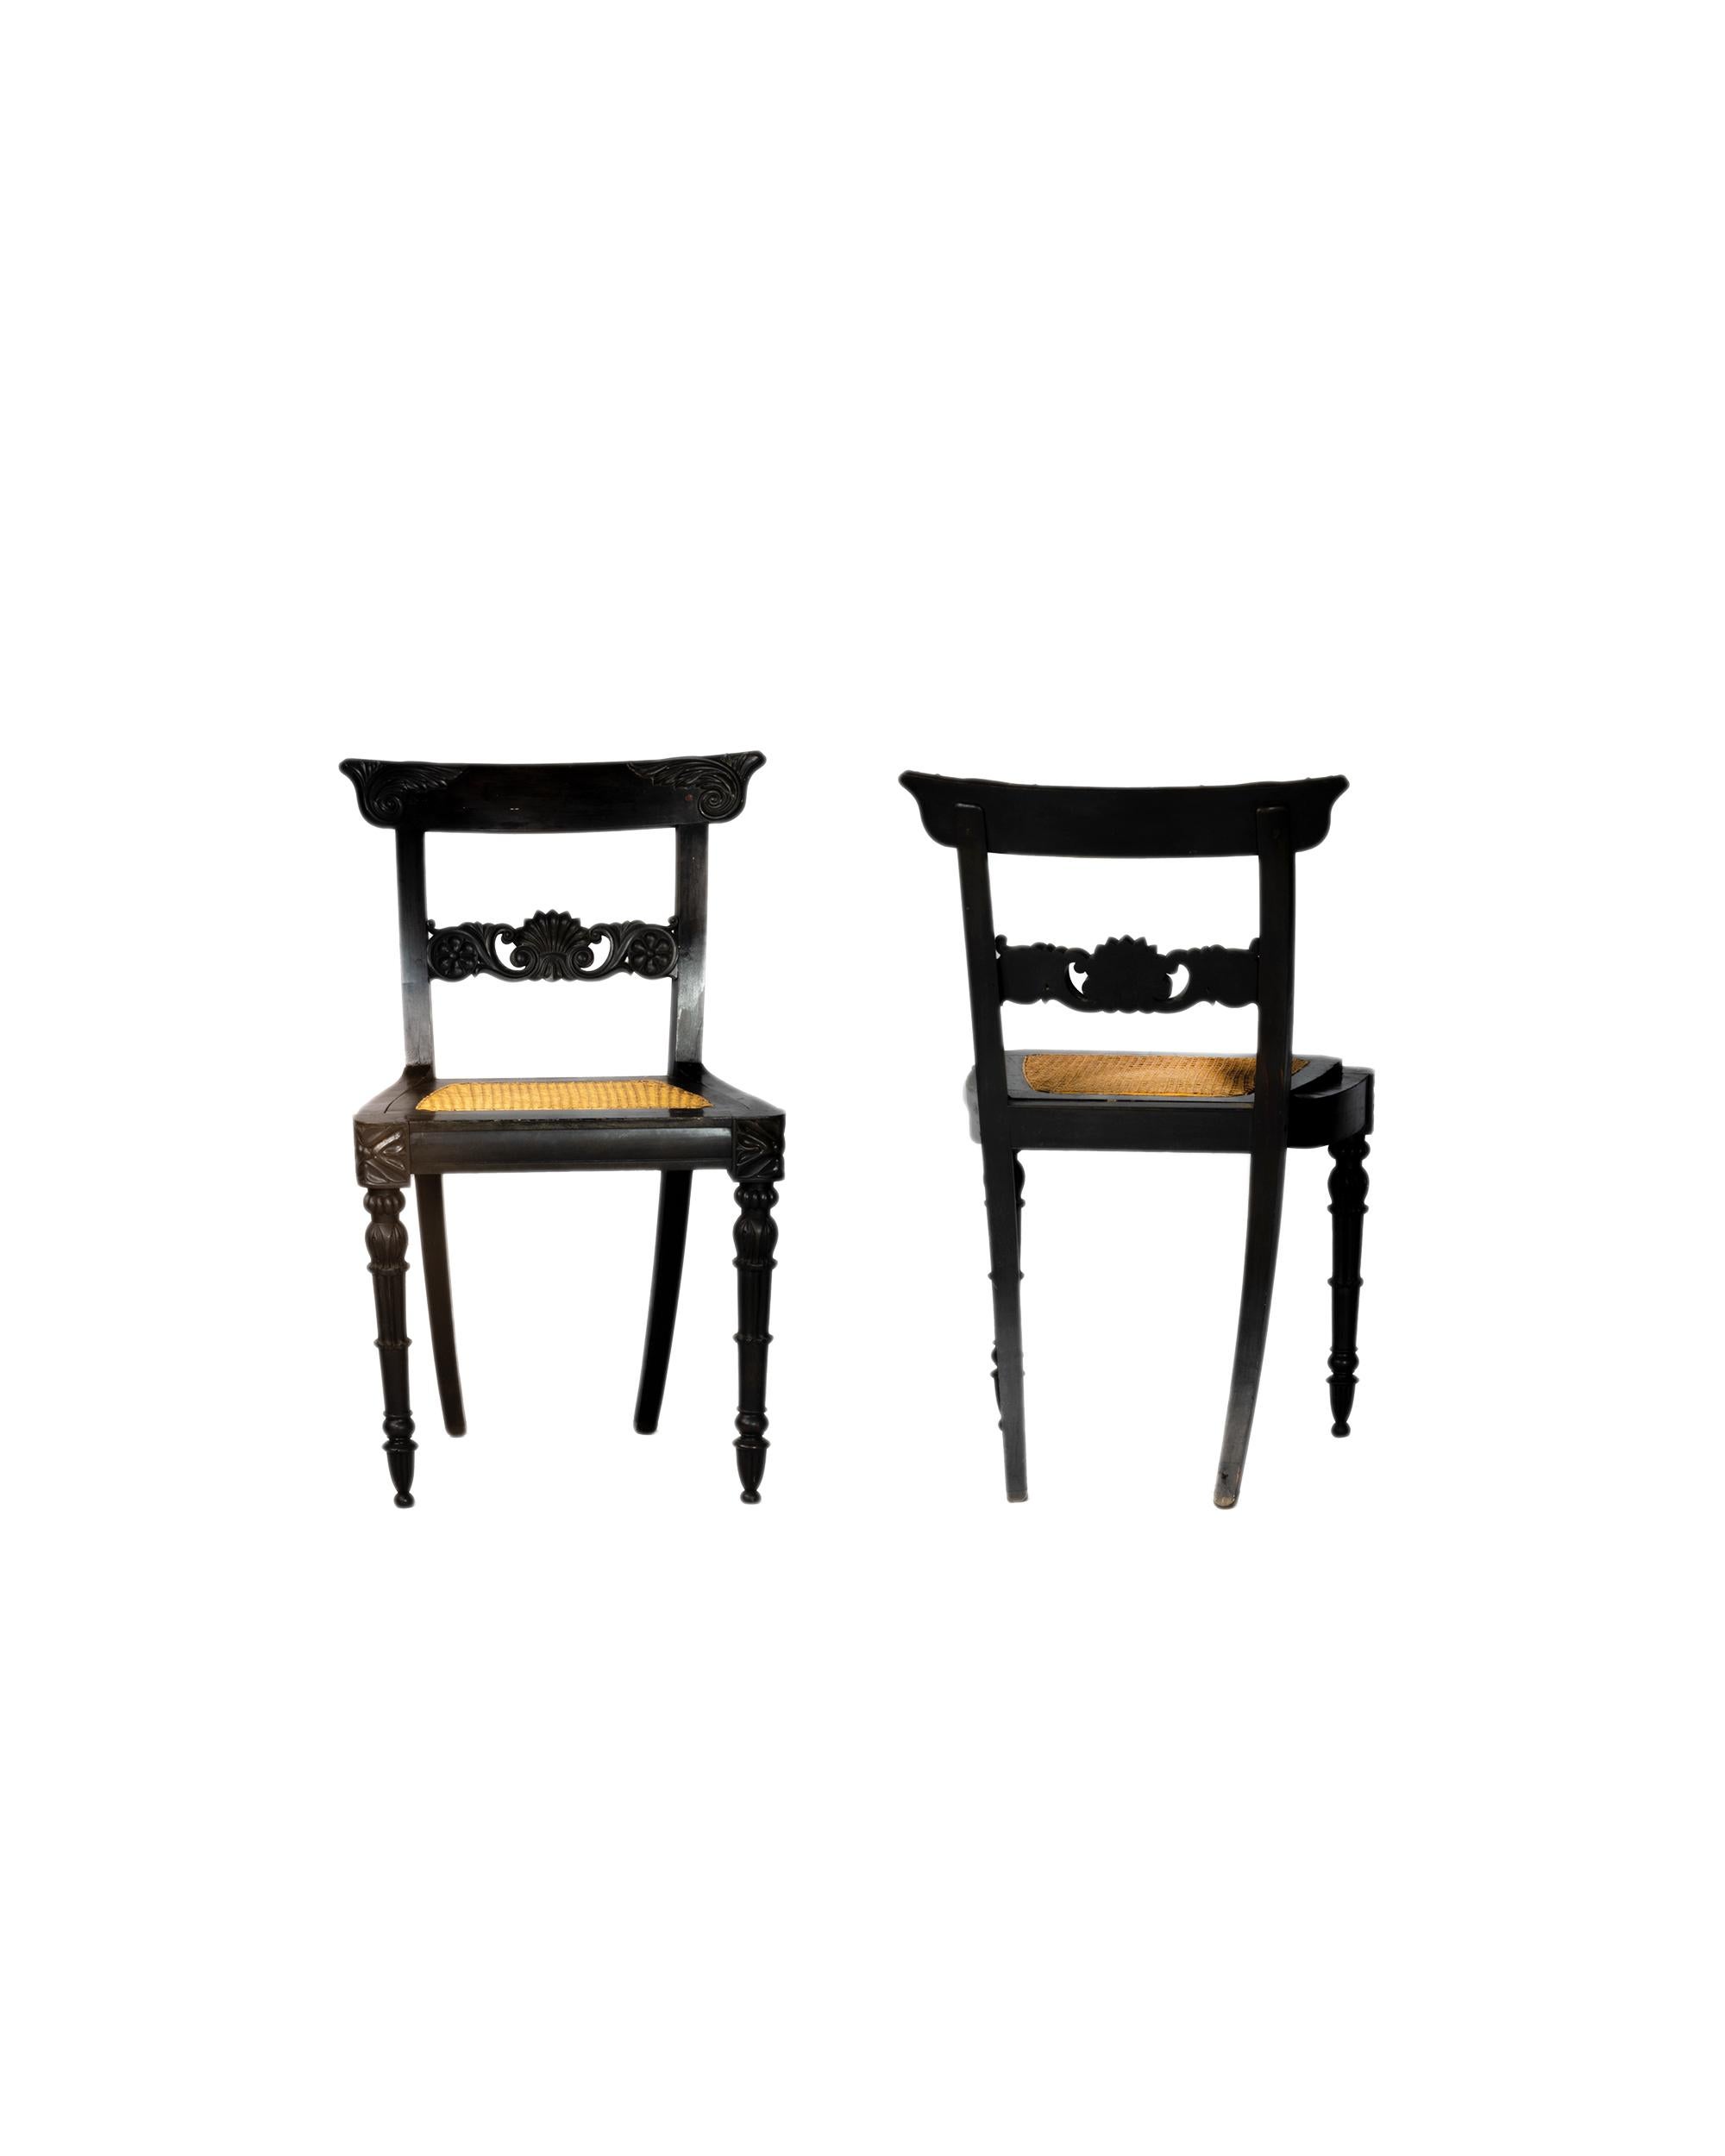 Un bel ensemble de deux chaises anglo-indiennes en ébène massif de Ceylan, avec des éclisses horizontales à motifs floraux reposant sur des pieds avant cannelés, un dossier simple et des assises cannelées. 
Les cadres cannelés des chaises ajoutent